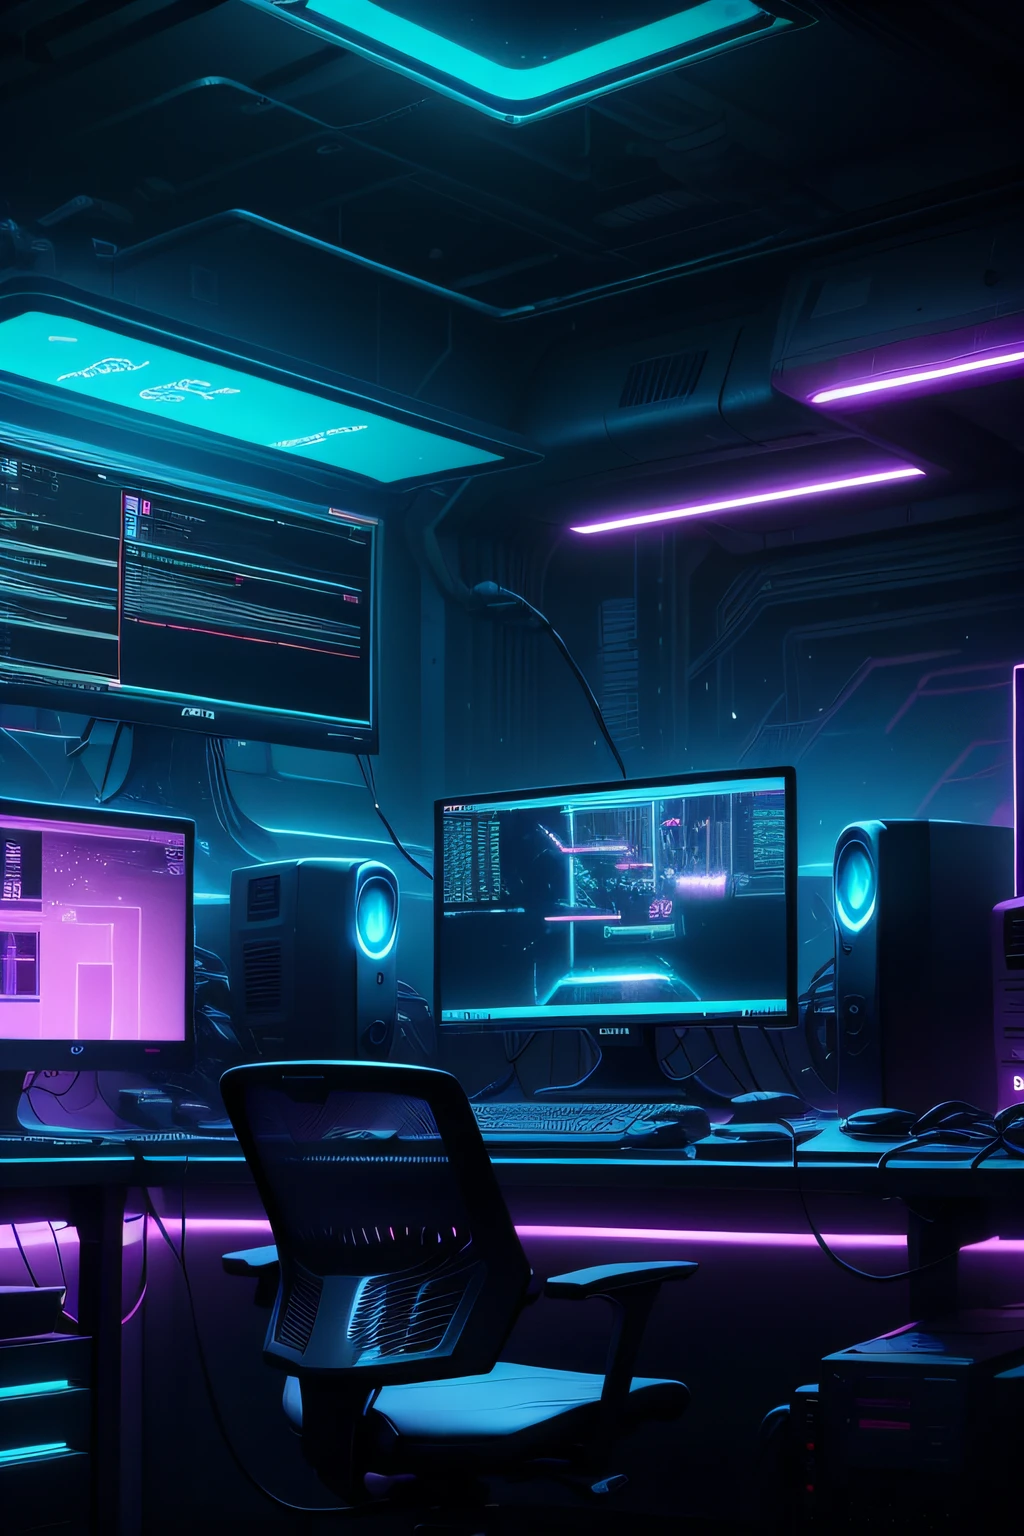 un laboratorio de computación con poca luz y con muchos monitores y un teclado, entorno ciberpunk, Configuración ciberpunk, iluminación de neón cibernético, ciberespacio, cyberpunk con luces de neón, luces de neón cibernéticas, en una habitación temática cyberpunk, ciberpunk interior, Pantalla de jugador sobre mesa de metal, estética cibernética, Estilo cibernético, computadora de ciencia ficción, fondo cibernético, instalación cibernética, consola y computadora